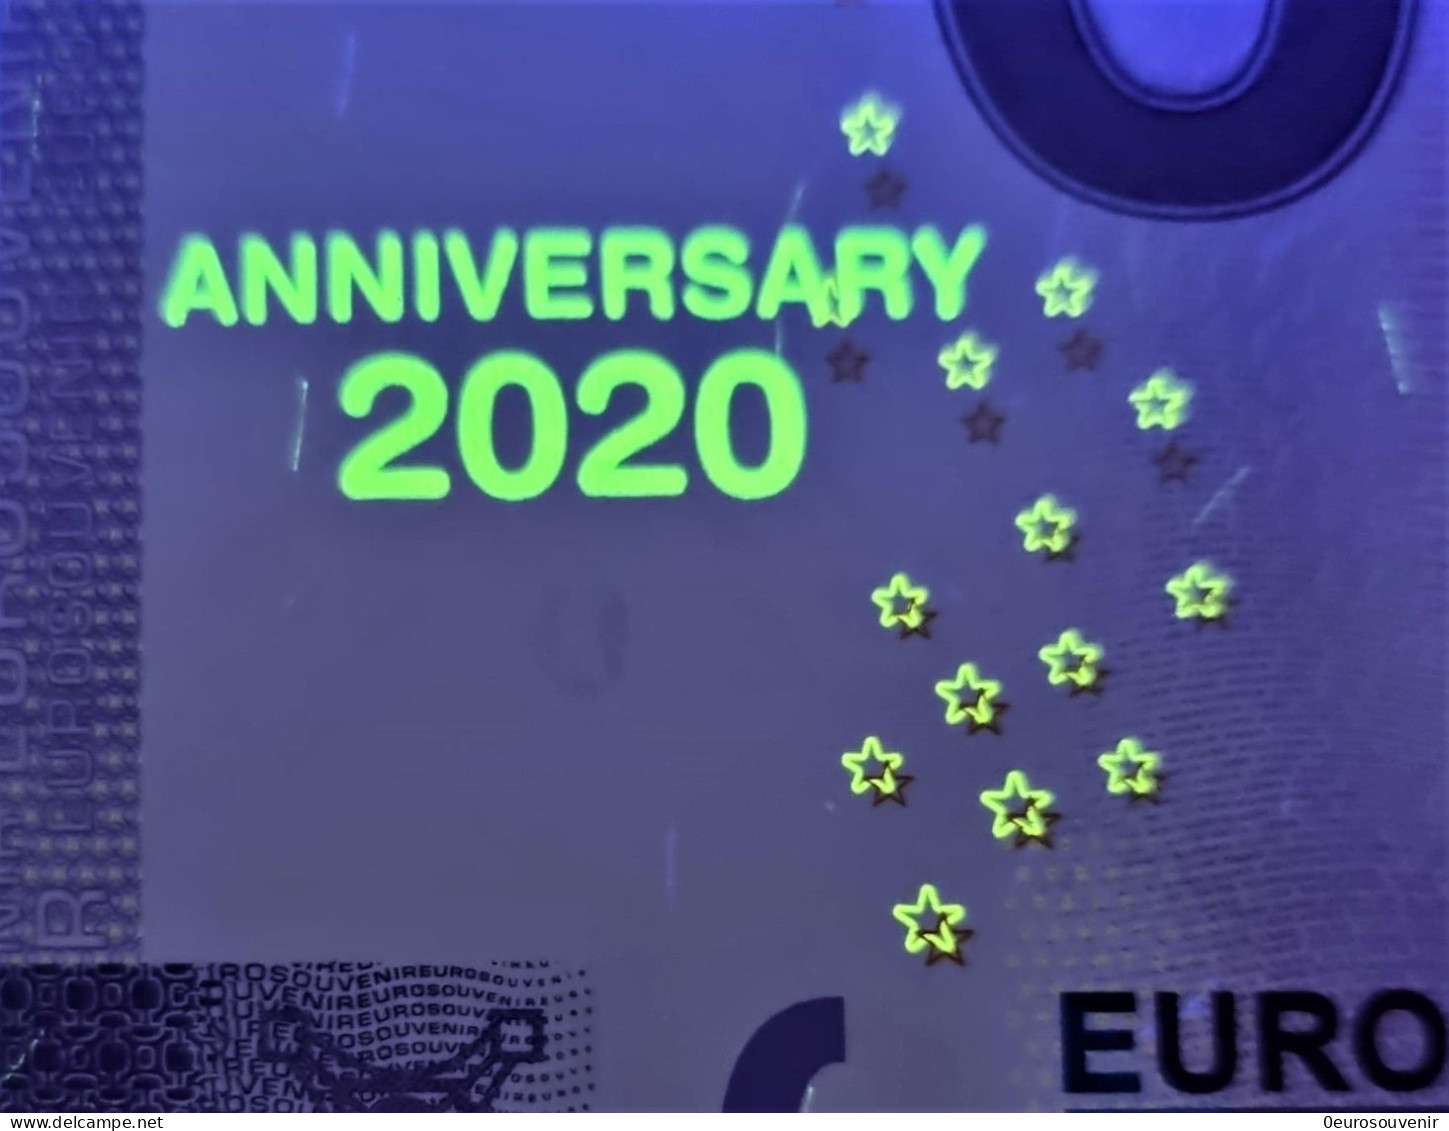 0-Euro PEBC 2020-1 BANKBILJET UIT HET HUWELIJKSJAAR  Set NORMAL+ANNIVERSARY - Privatentwürfe